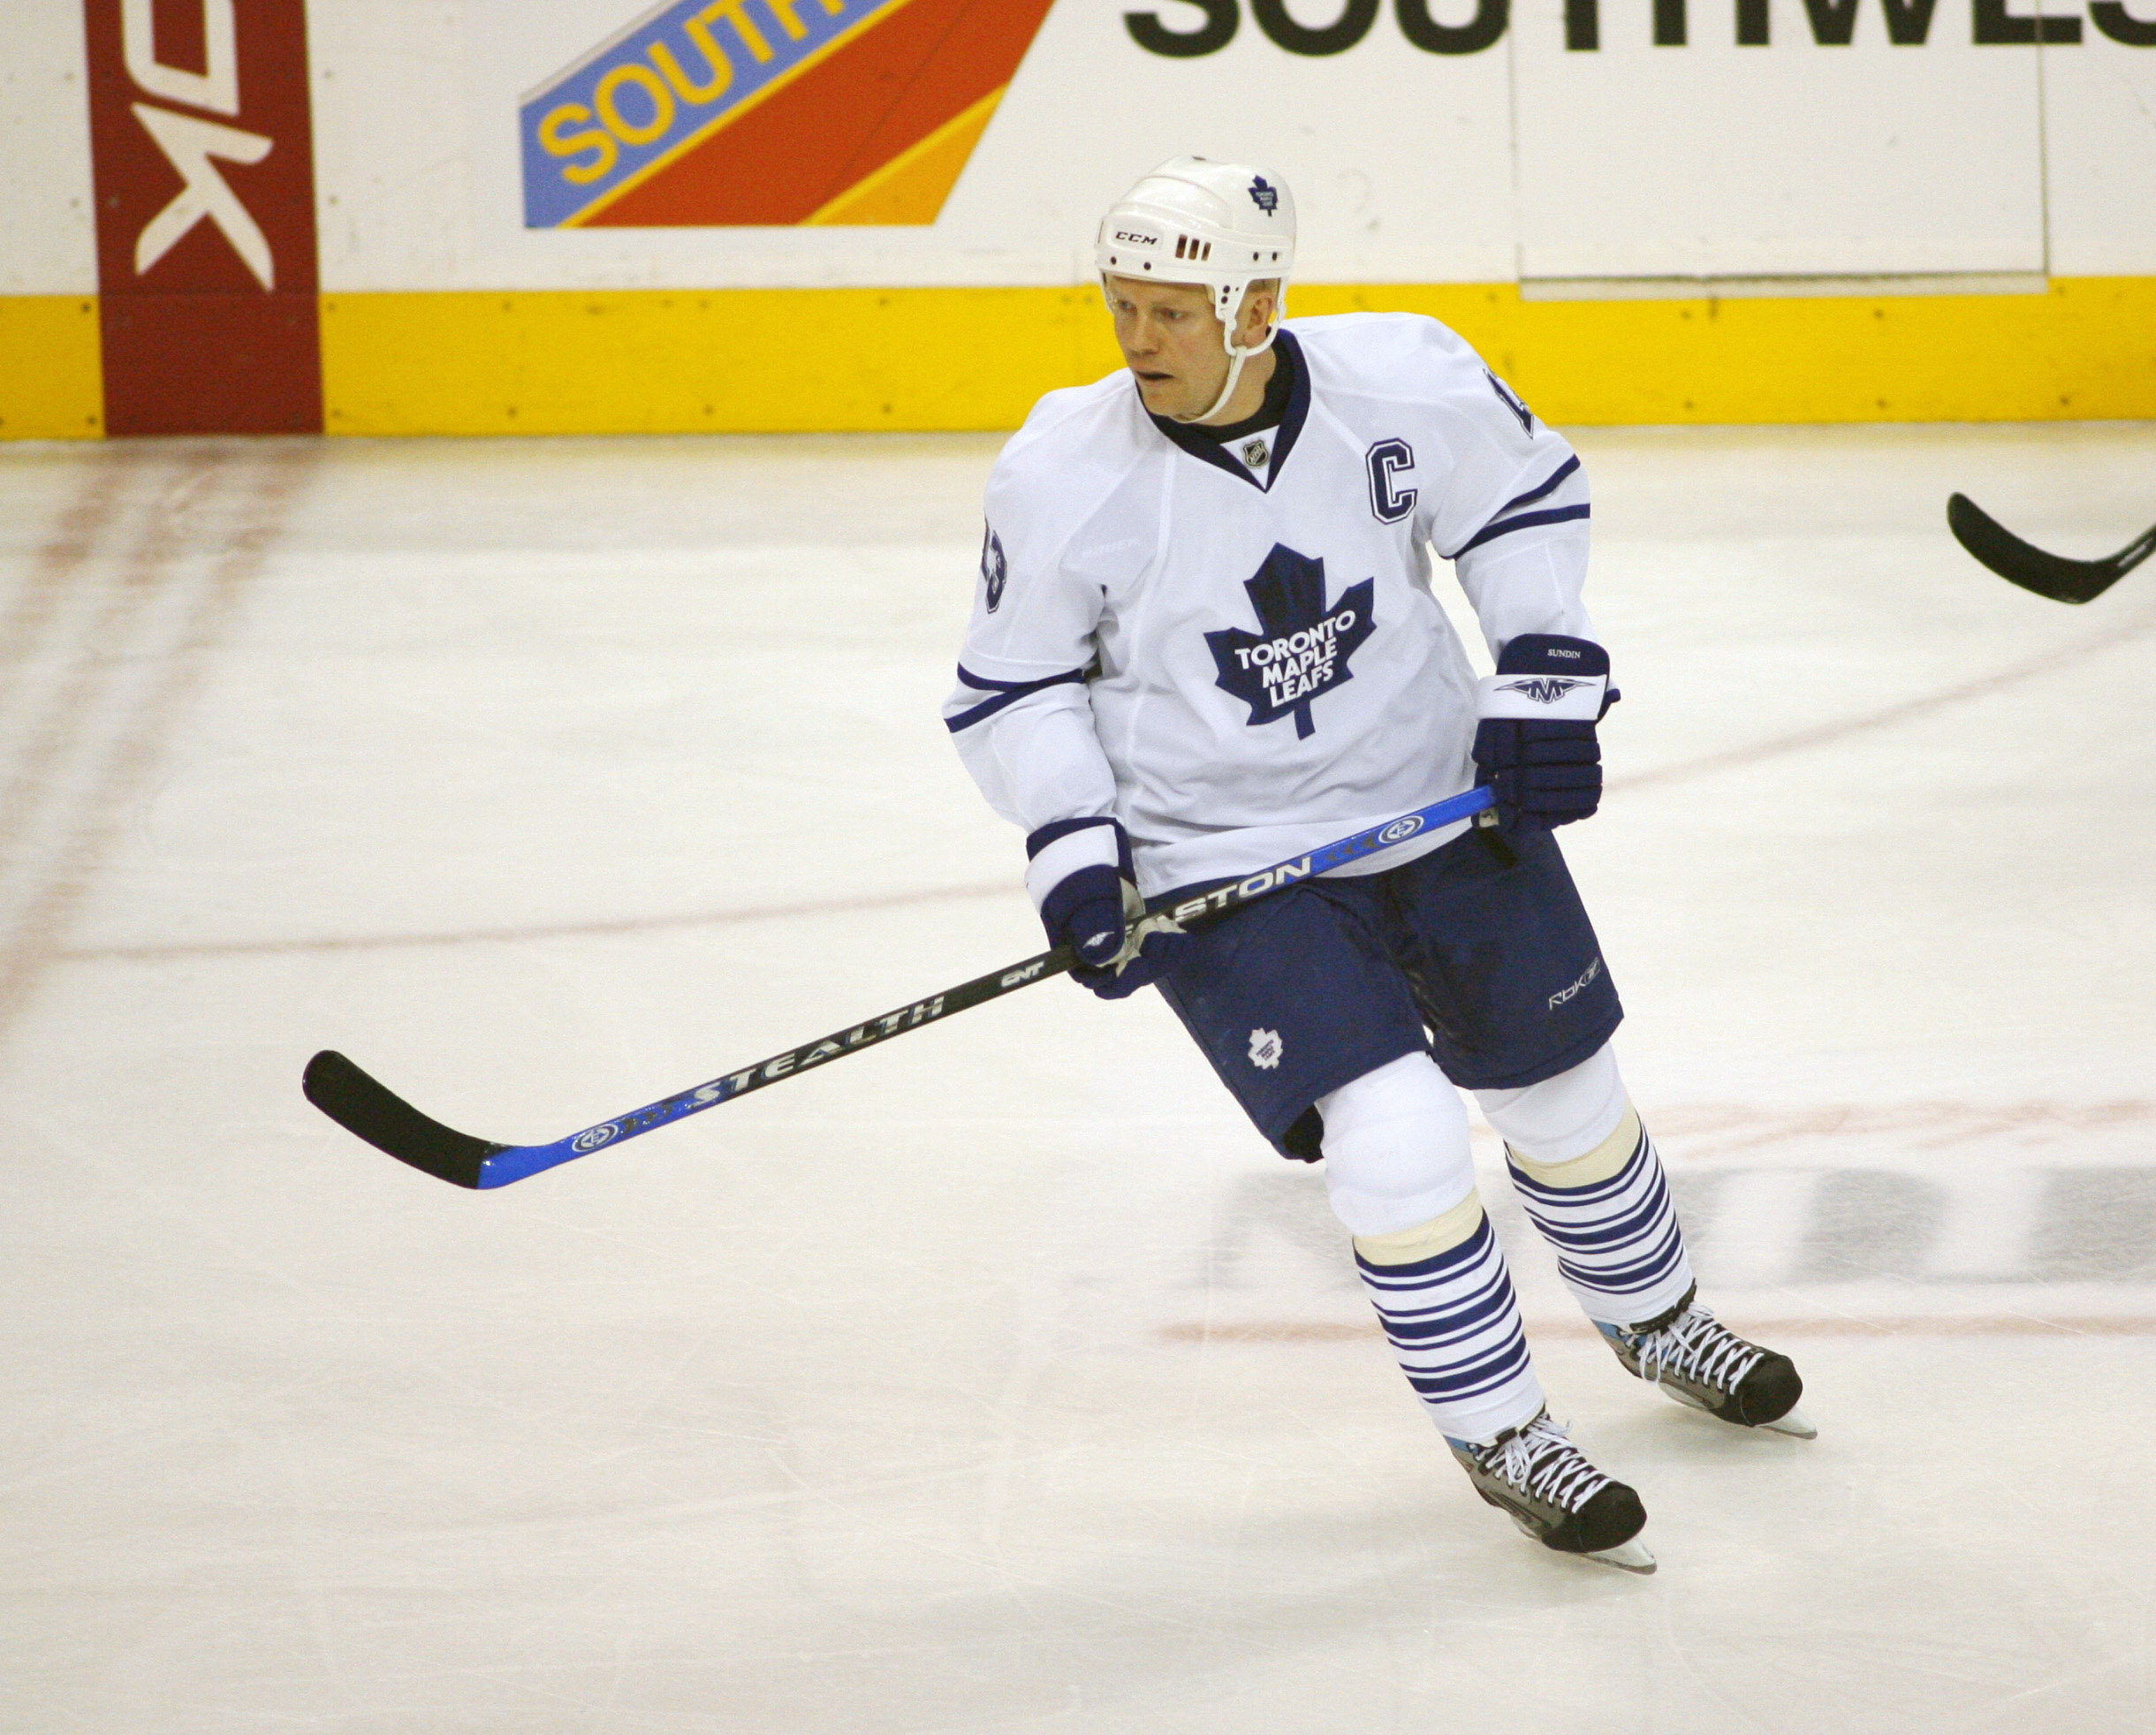 Toronto Maple Leafs center Mats Sundin